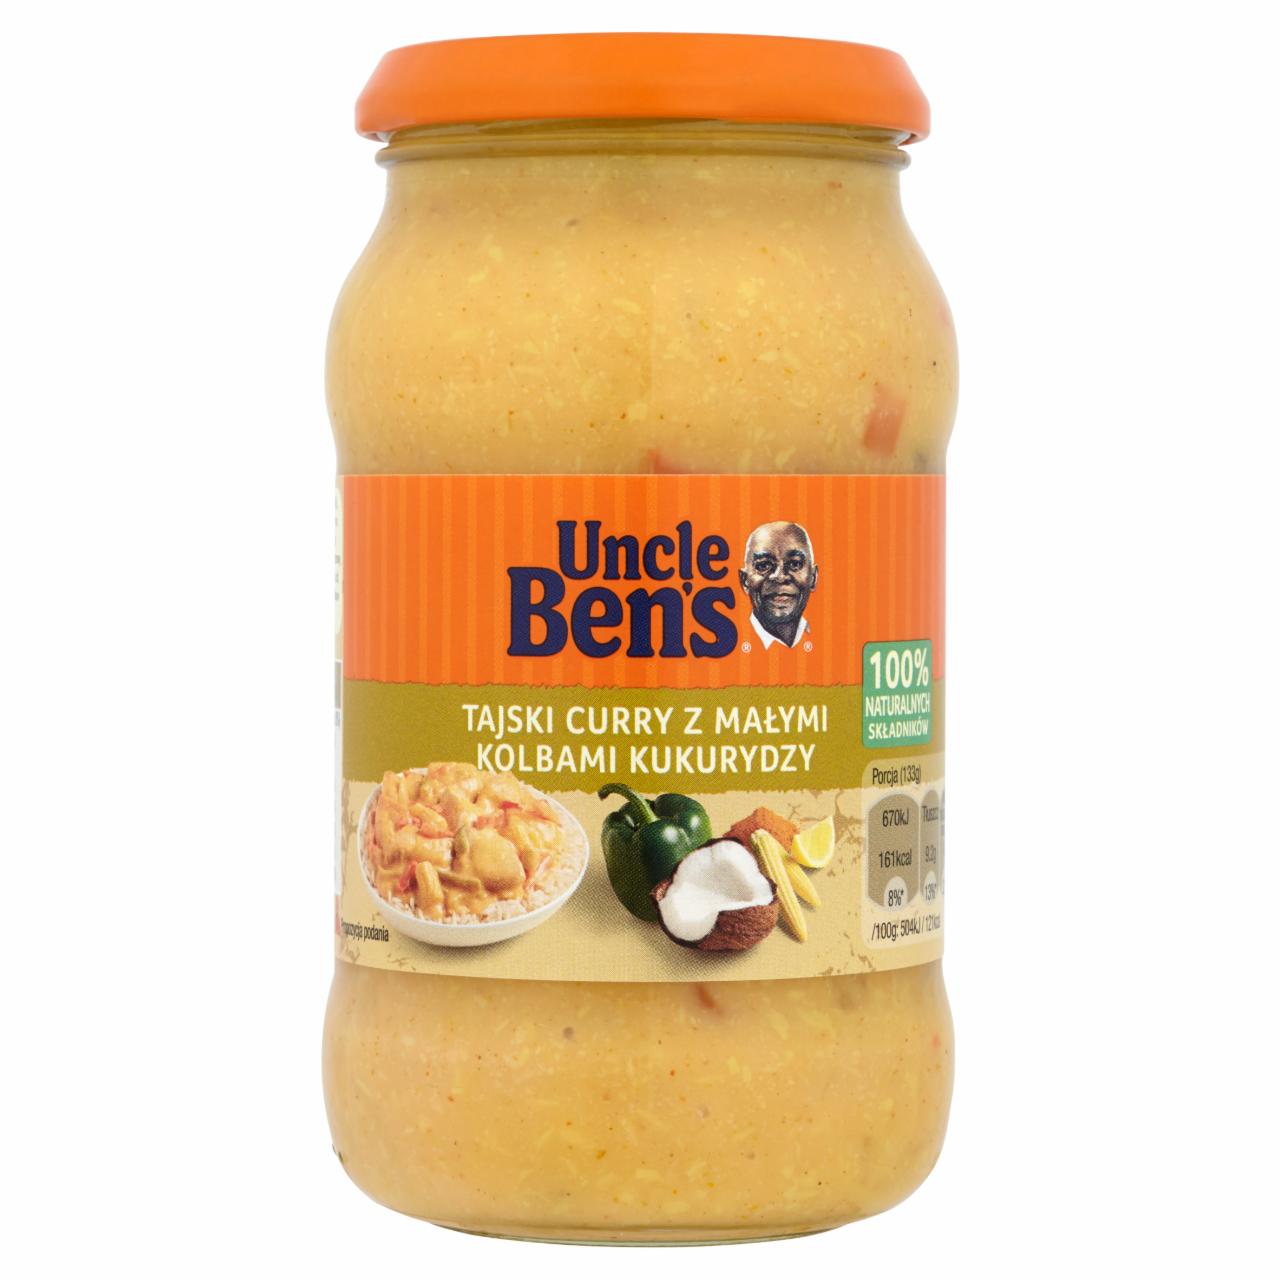 Zdjęcia - Uncle Ben's Sos tajski curry z małymi kolbami kukurydzy 400 g